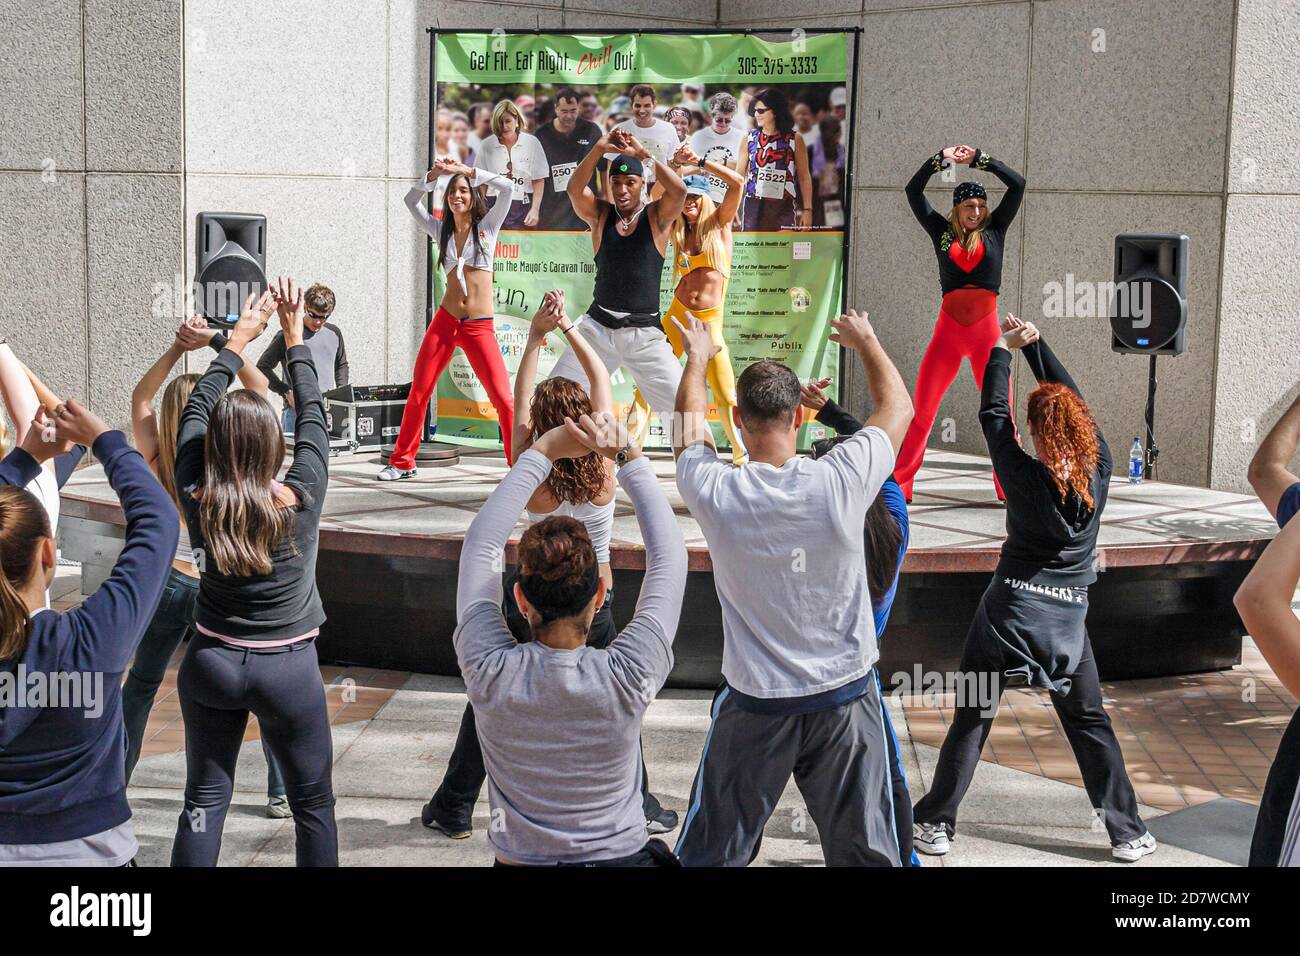 Miami Florida, Mayor's Health & Fitness Challenge, Zumba Salsa Aerobic Session Class Workout, hispanische Frau weibliche Frauen Mann Männer, Stockfoto